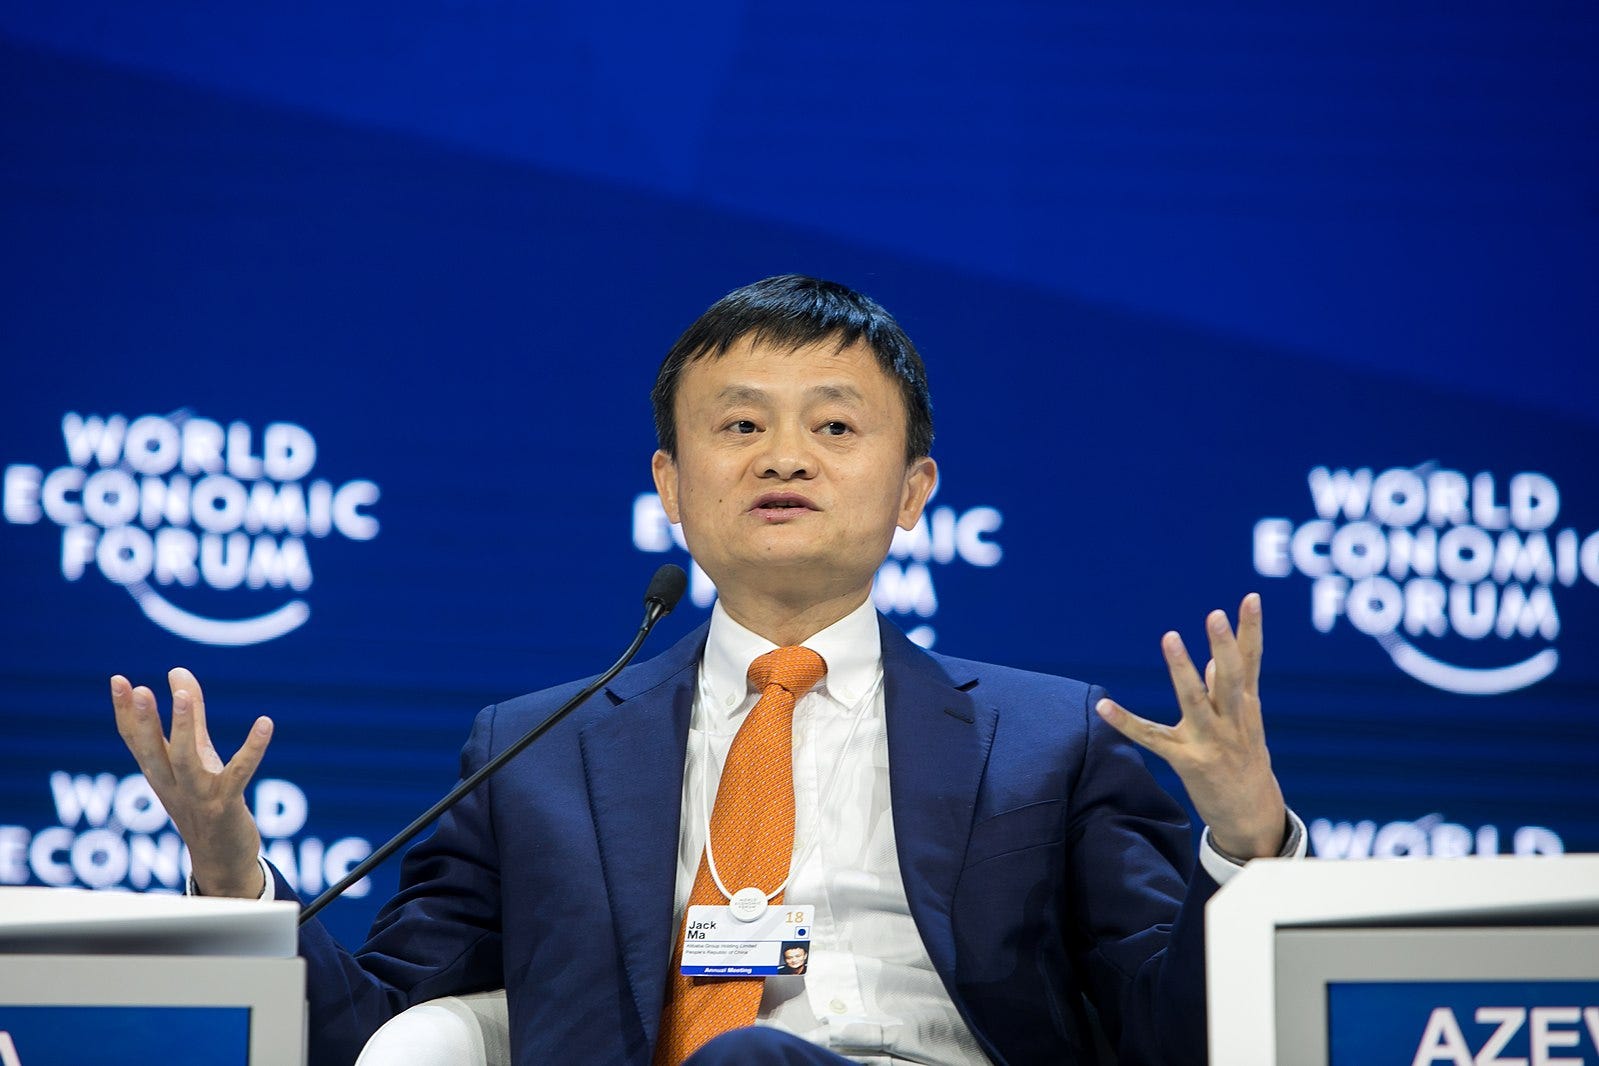 Why China Slashed Jack Ma's Ant IPO Hopes, Experts Explain